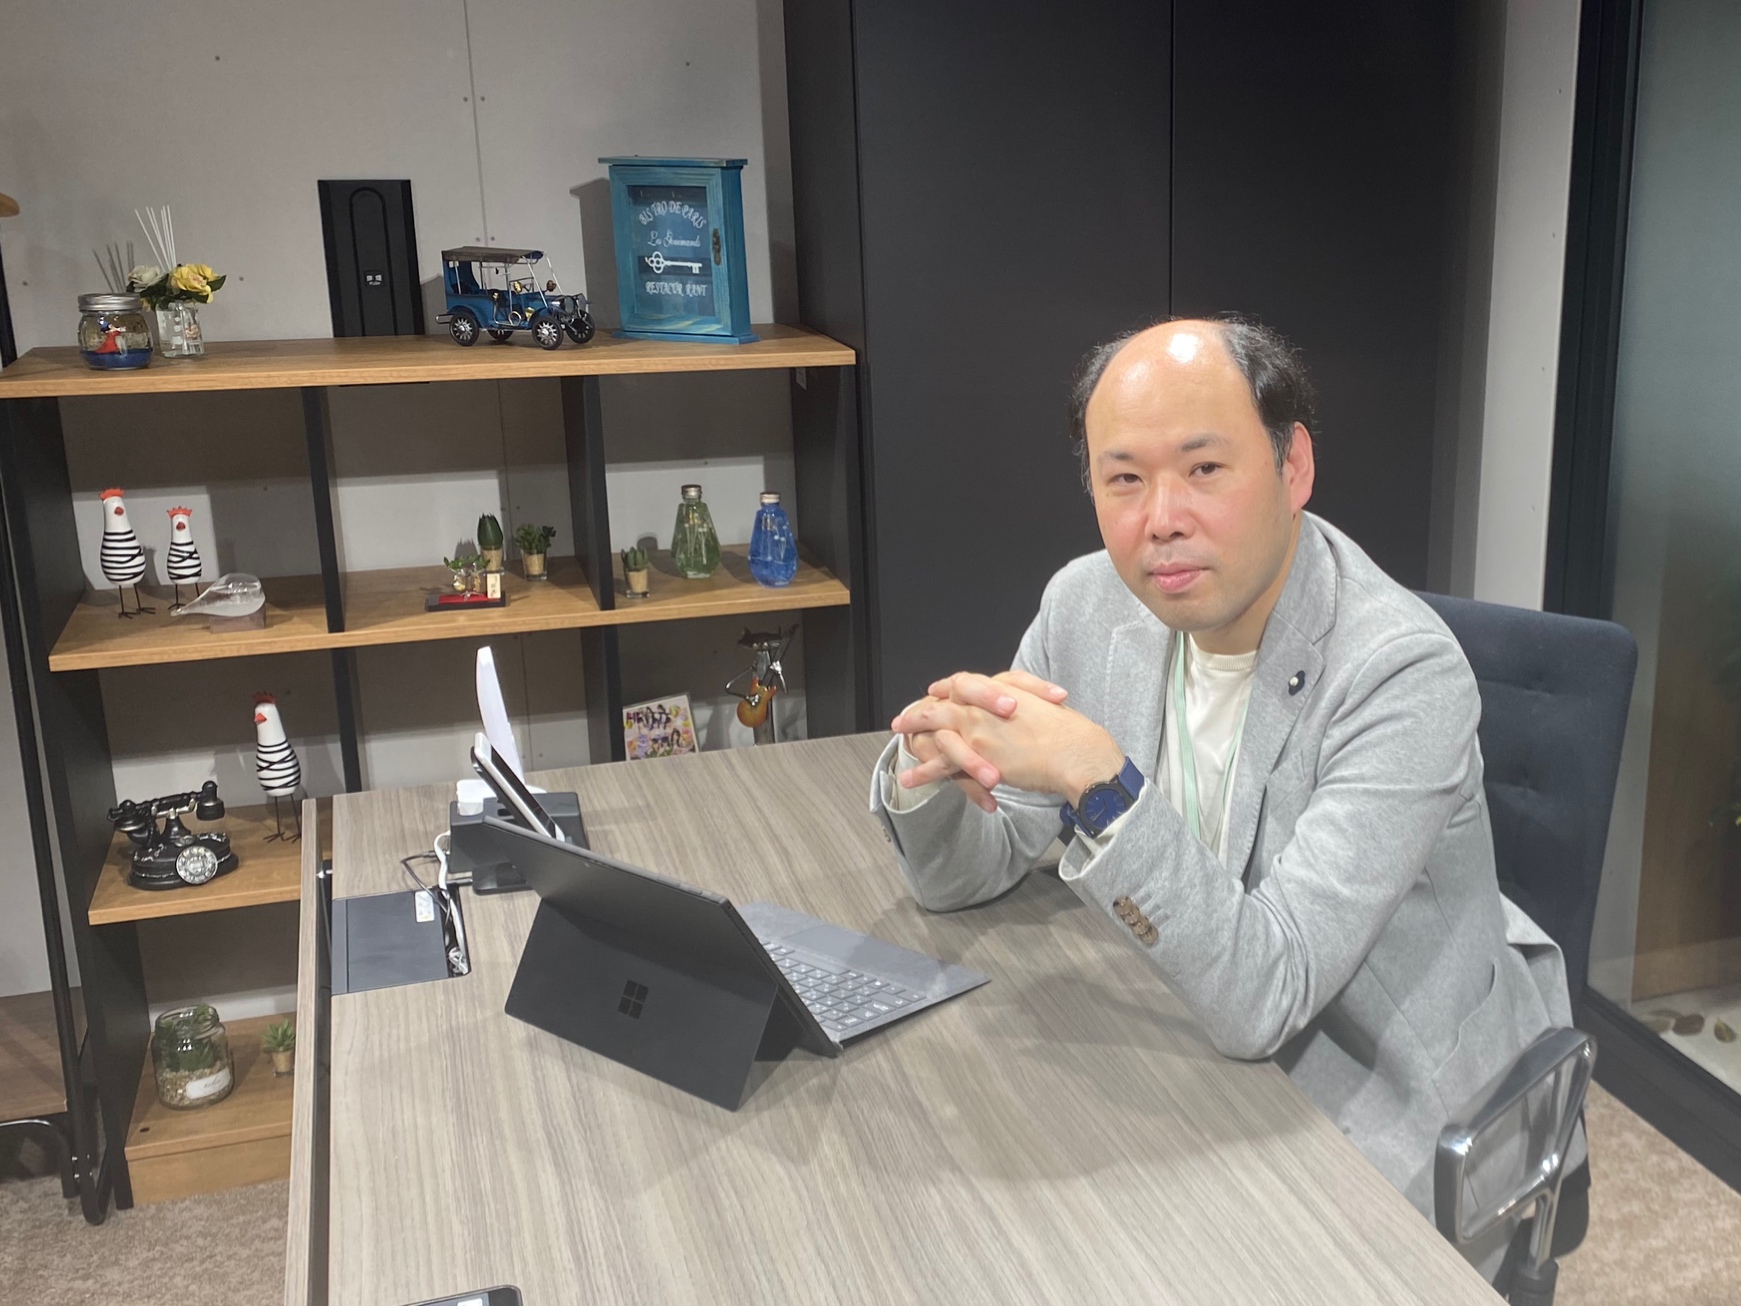 日本有数のIT企業から独立した経歴を持つ代表取締役社長の柴山 洋徳氏。
自身が海外で学んだアジャイル開発や、UXデザインといったアプローチをクライアントに提供する企業の設立を決意し、同社を立ち上げた。